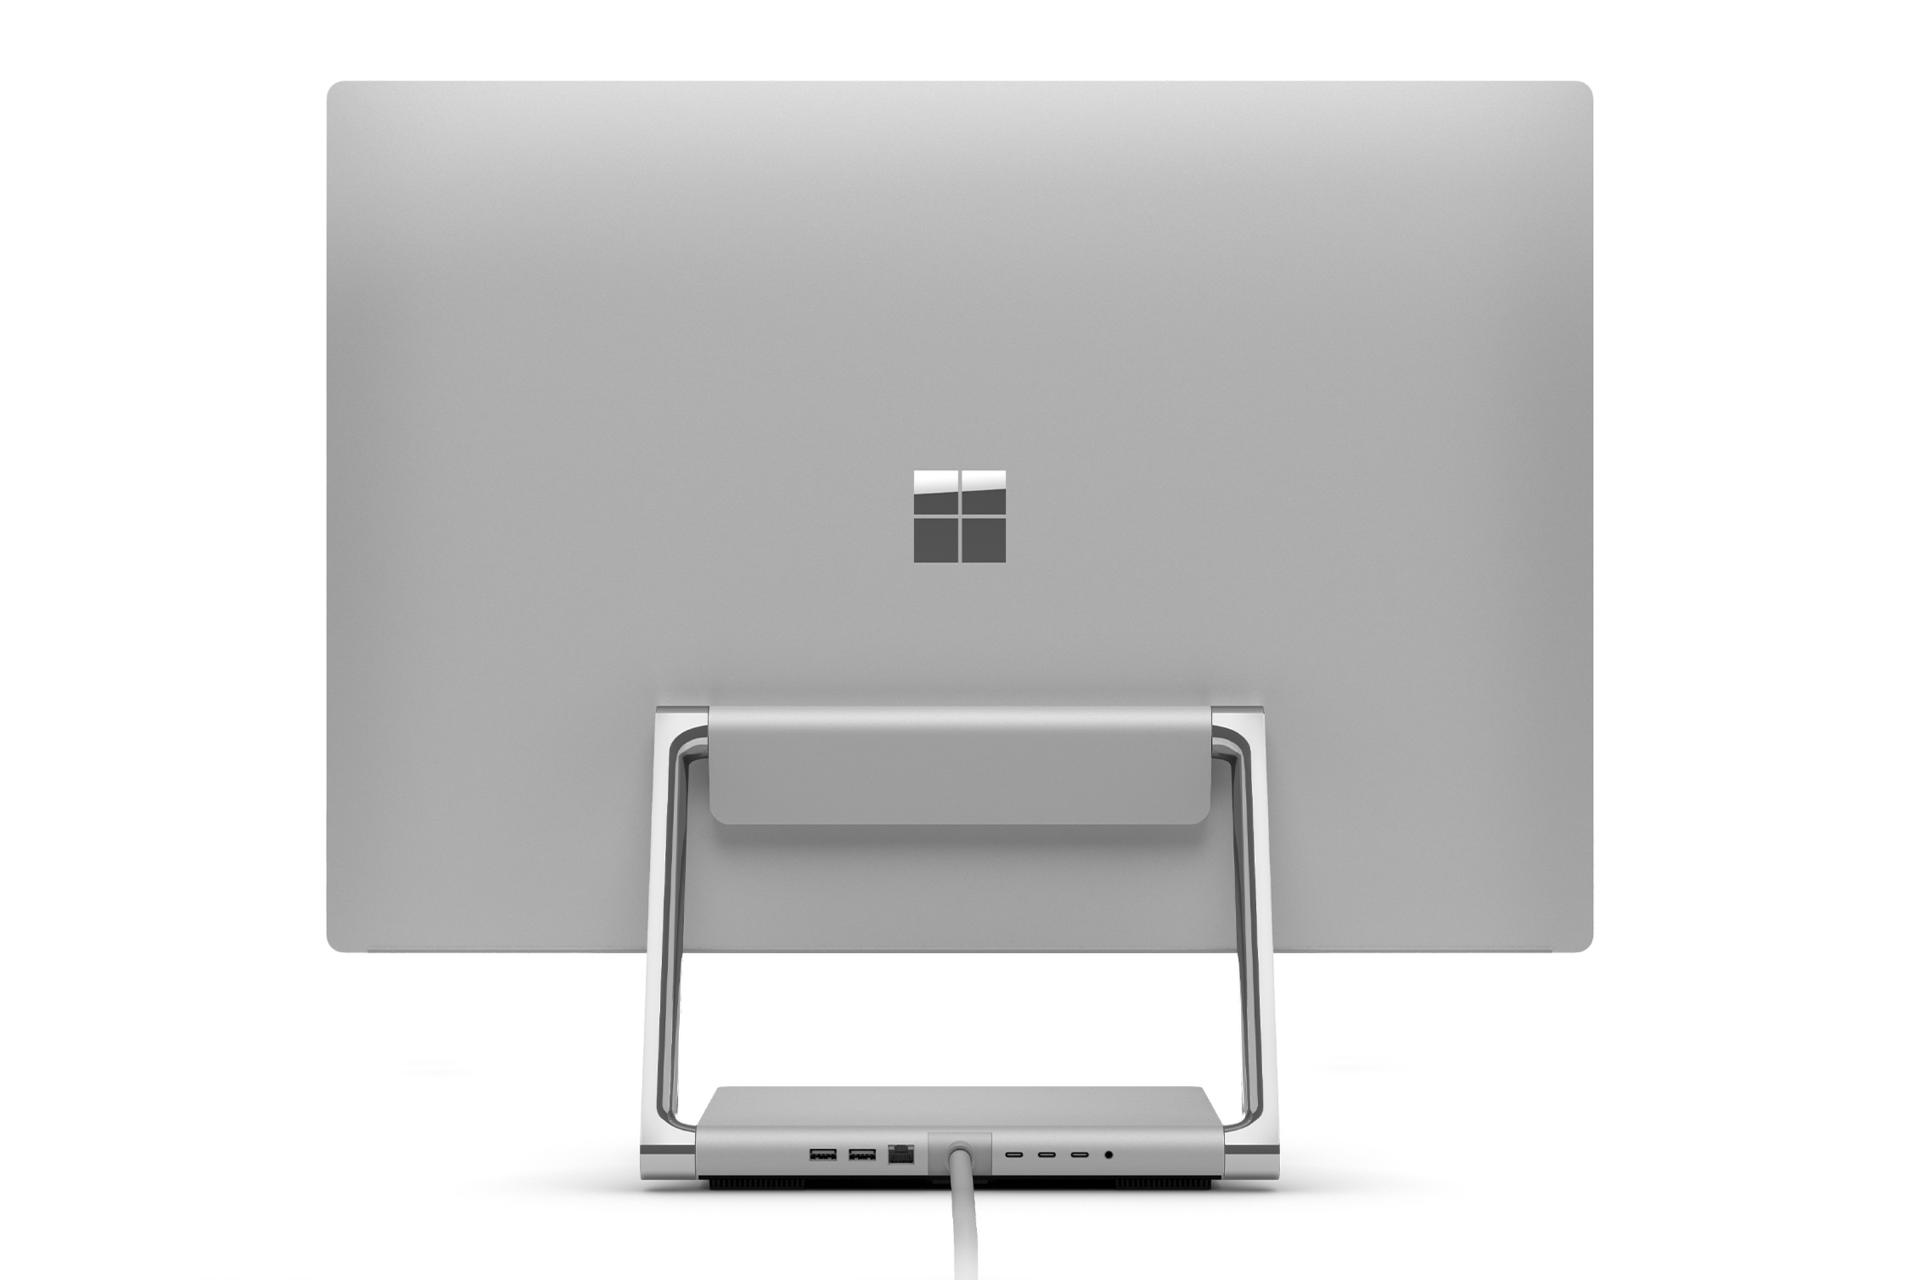 پنل پشت کامپیوتر همه کاره مایکروسافت سرفیس استودیو 2 پلاس / Microsoft Surface Studio 2 Plus